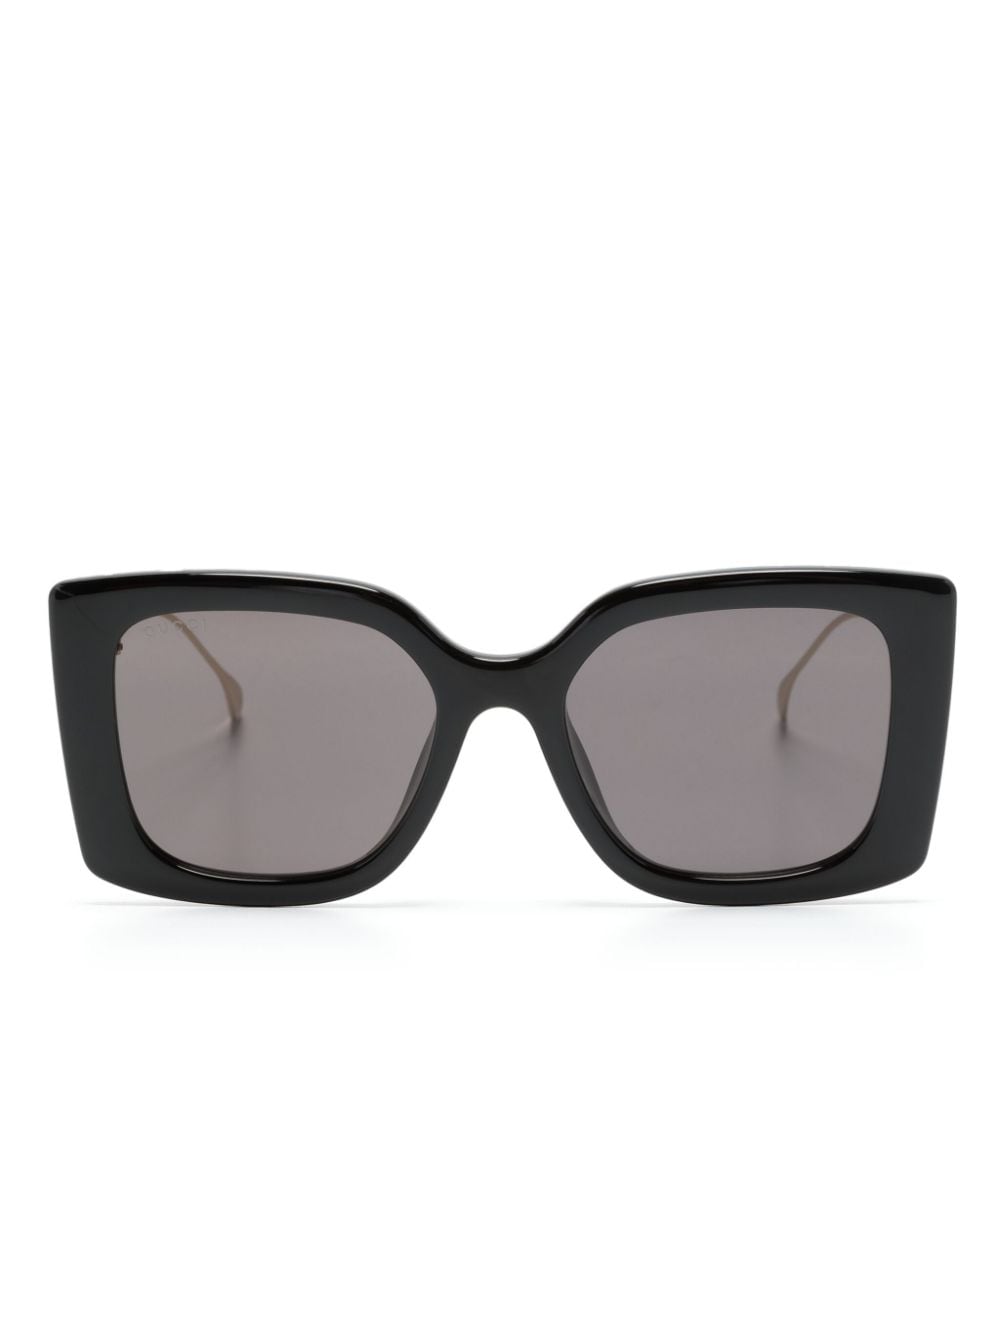 Gucci Eyewear Sonnenbrille mit Oversized-Gestell - Schwarz von Gucci Eyewear